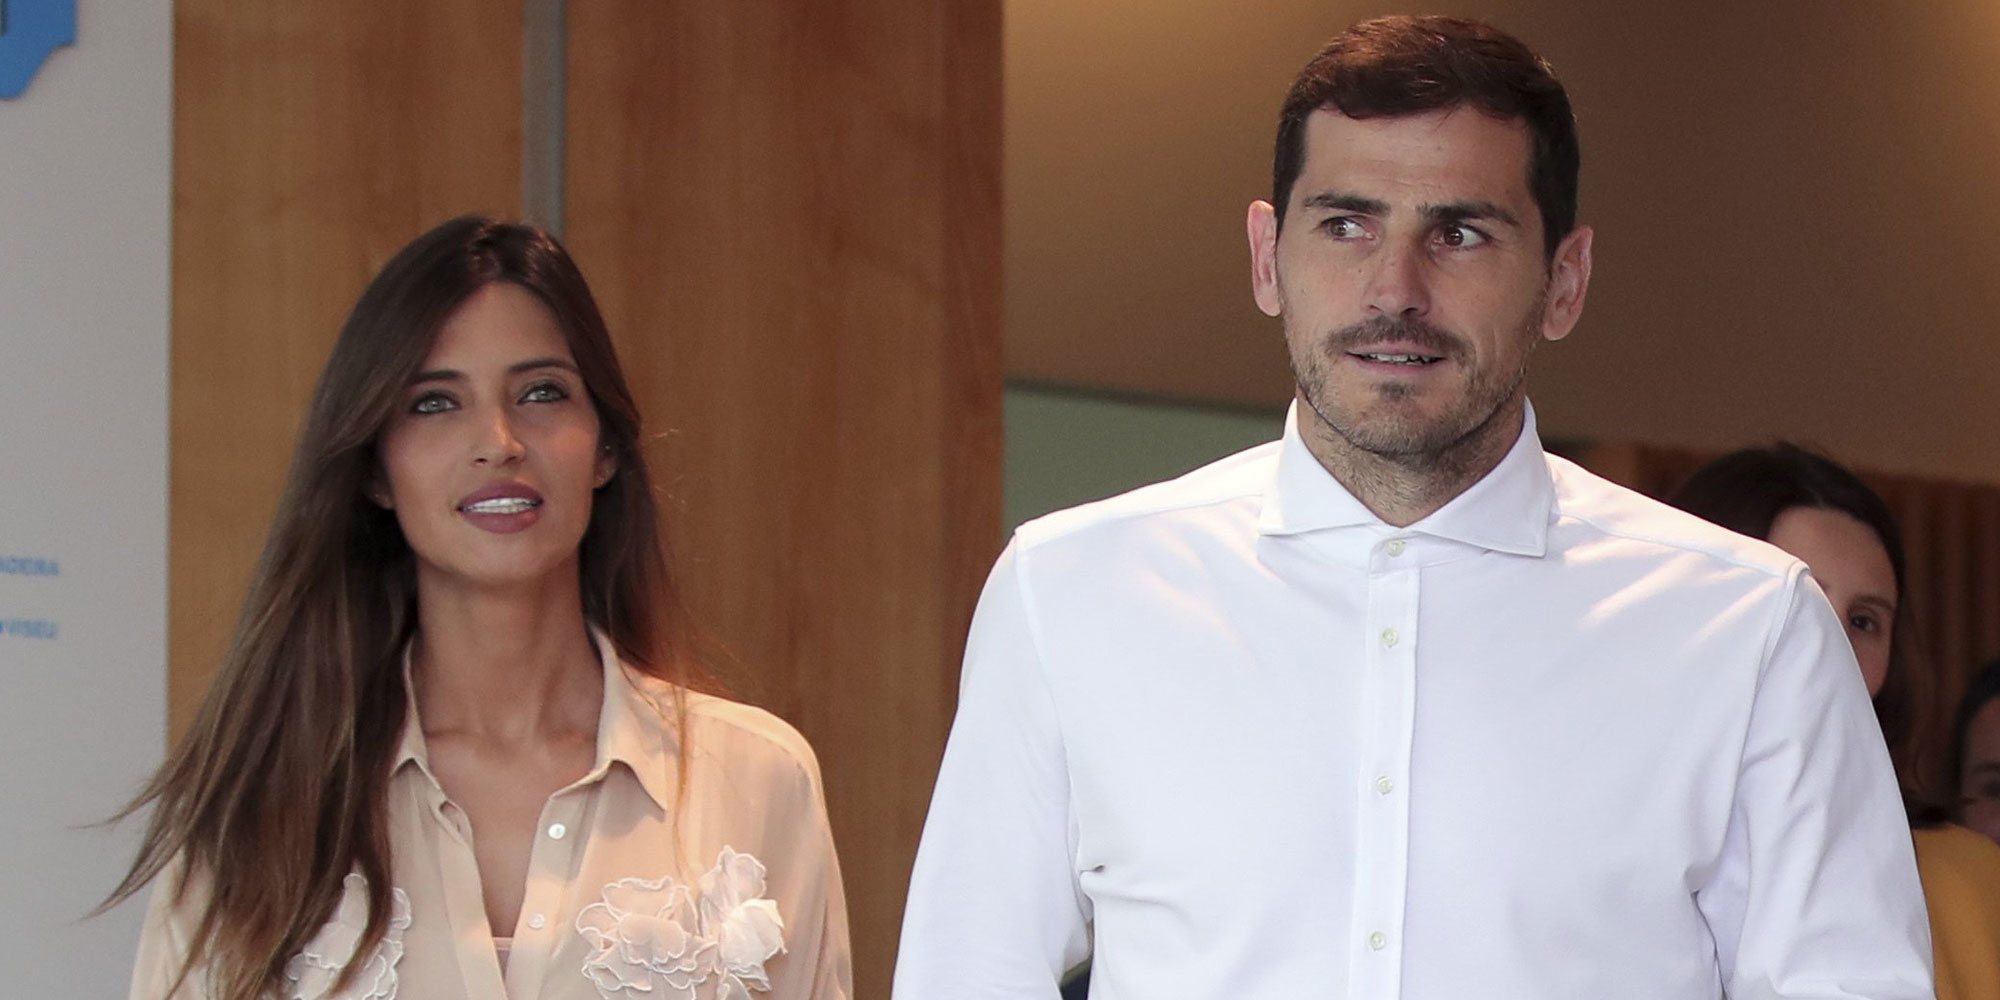 La impactante confesión de Iker Casillas sobre su matrimonio con Sara Carbonero